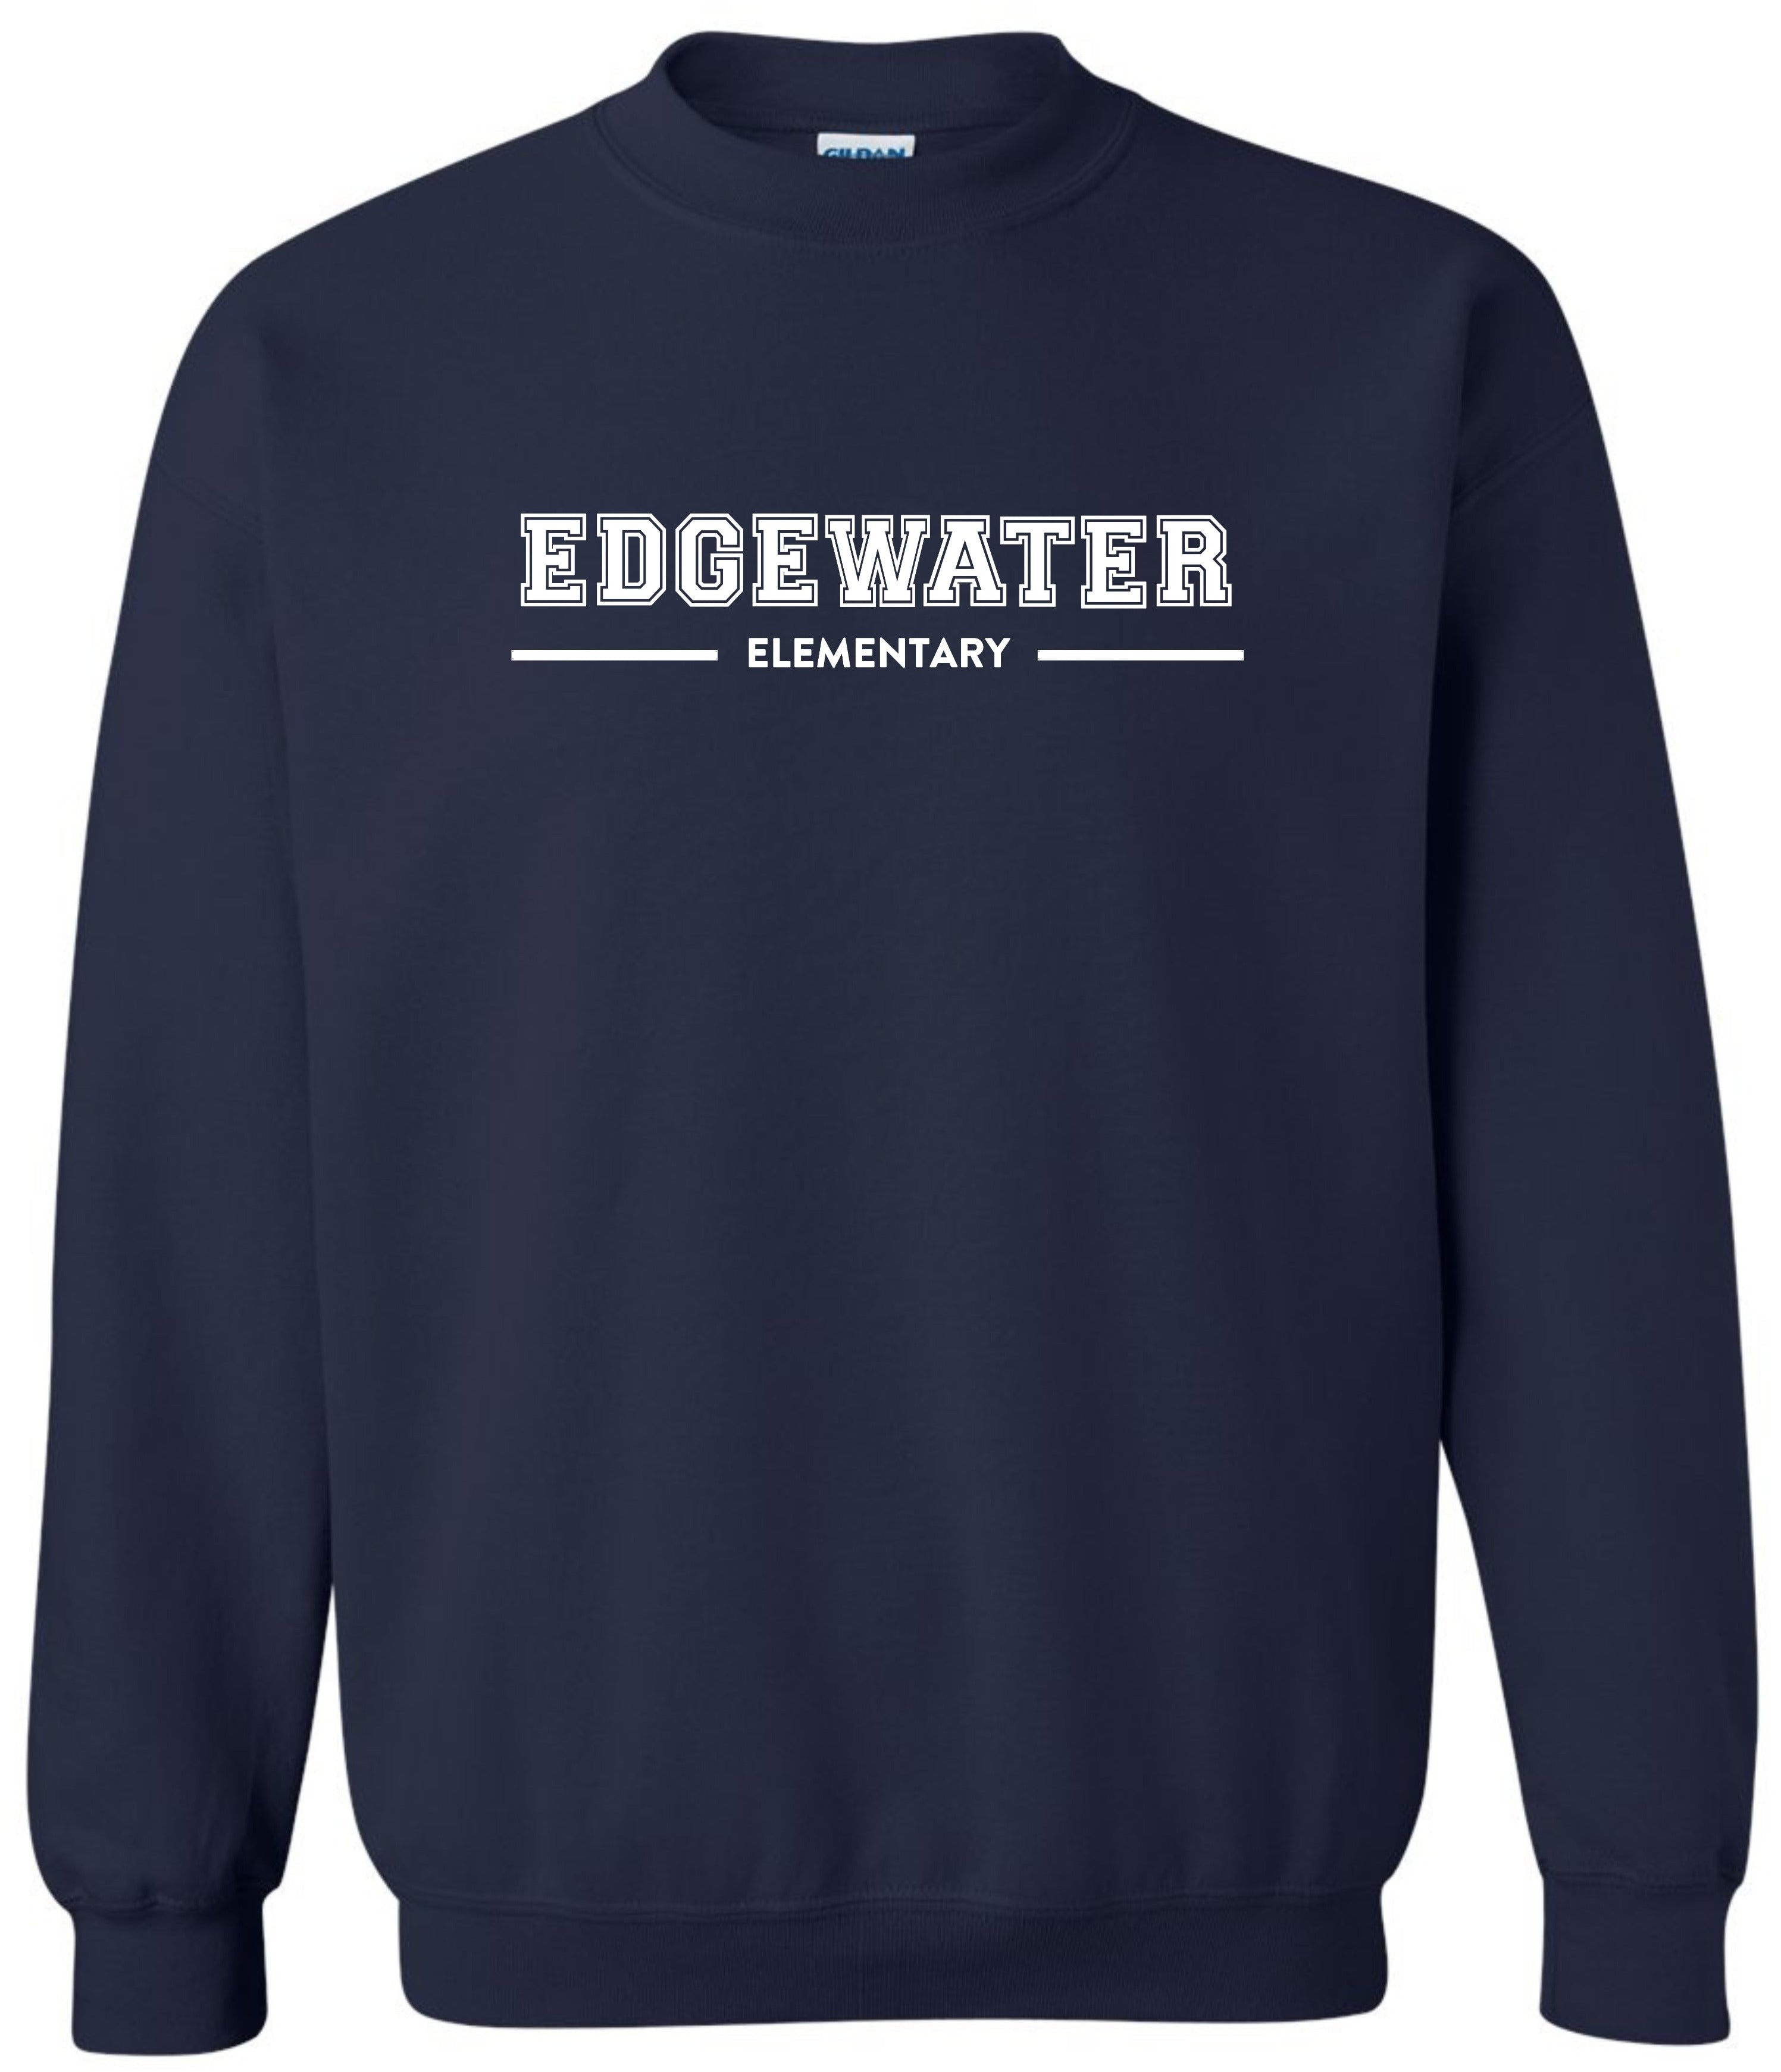 Edgewater Youth Crewneck Sweatshirt